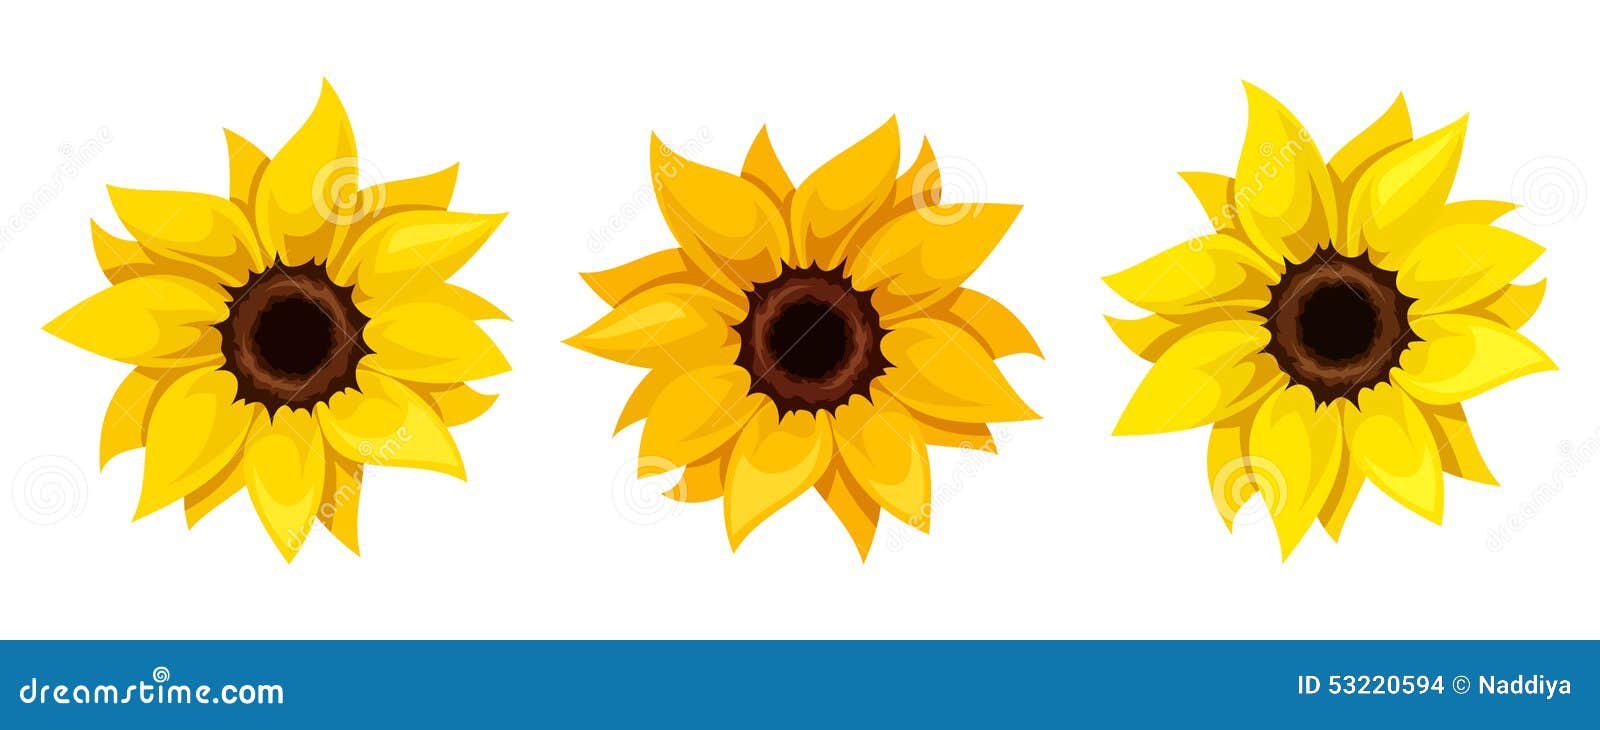 set of three sunflowers.  .